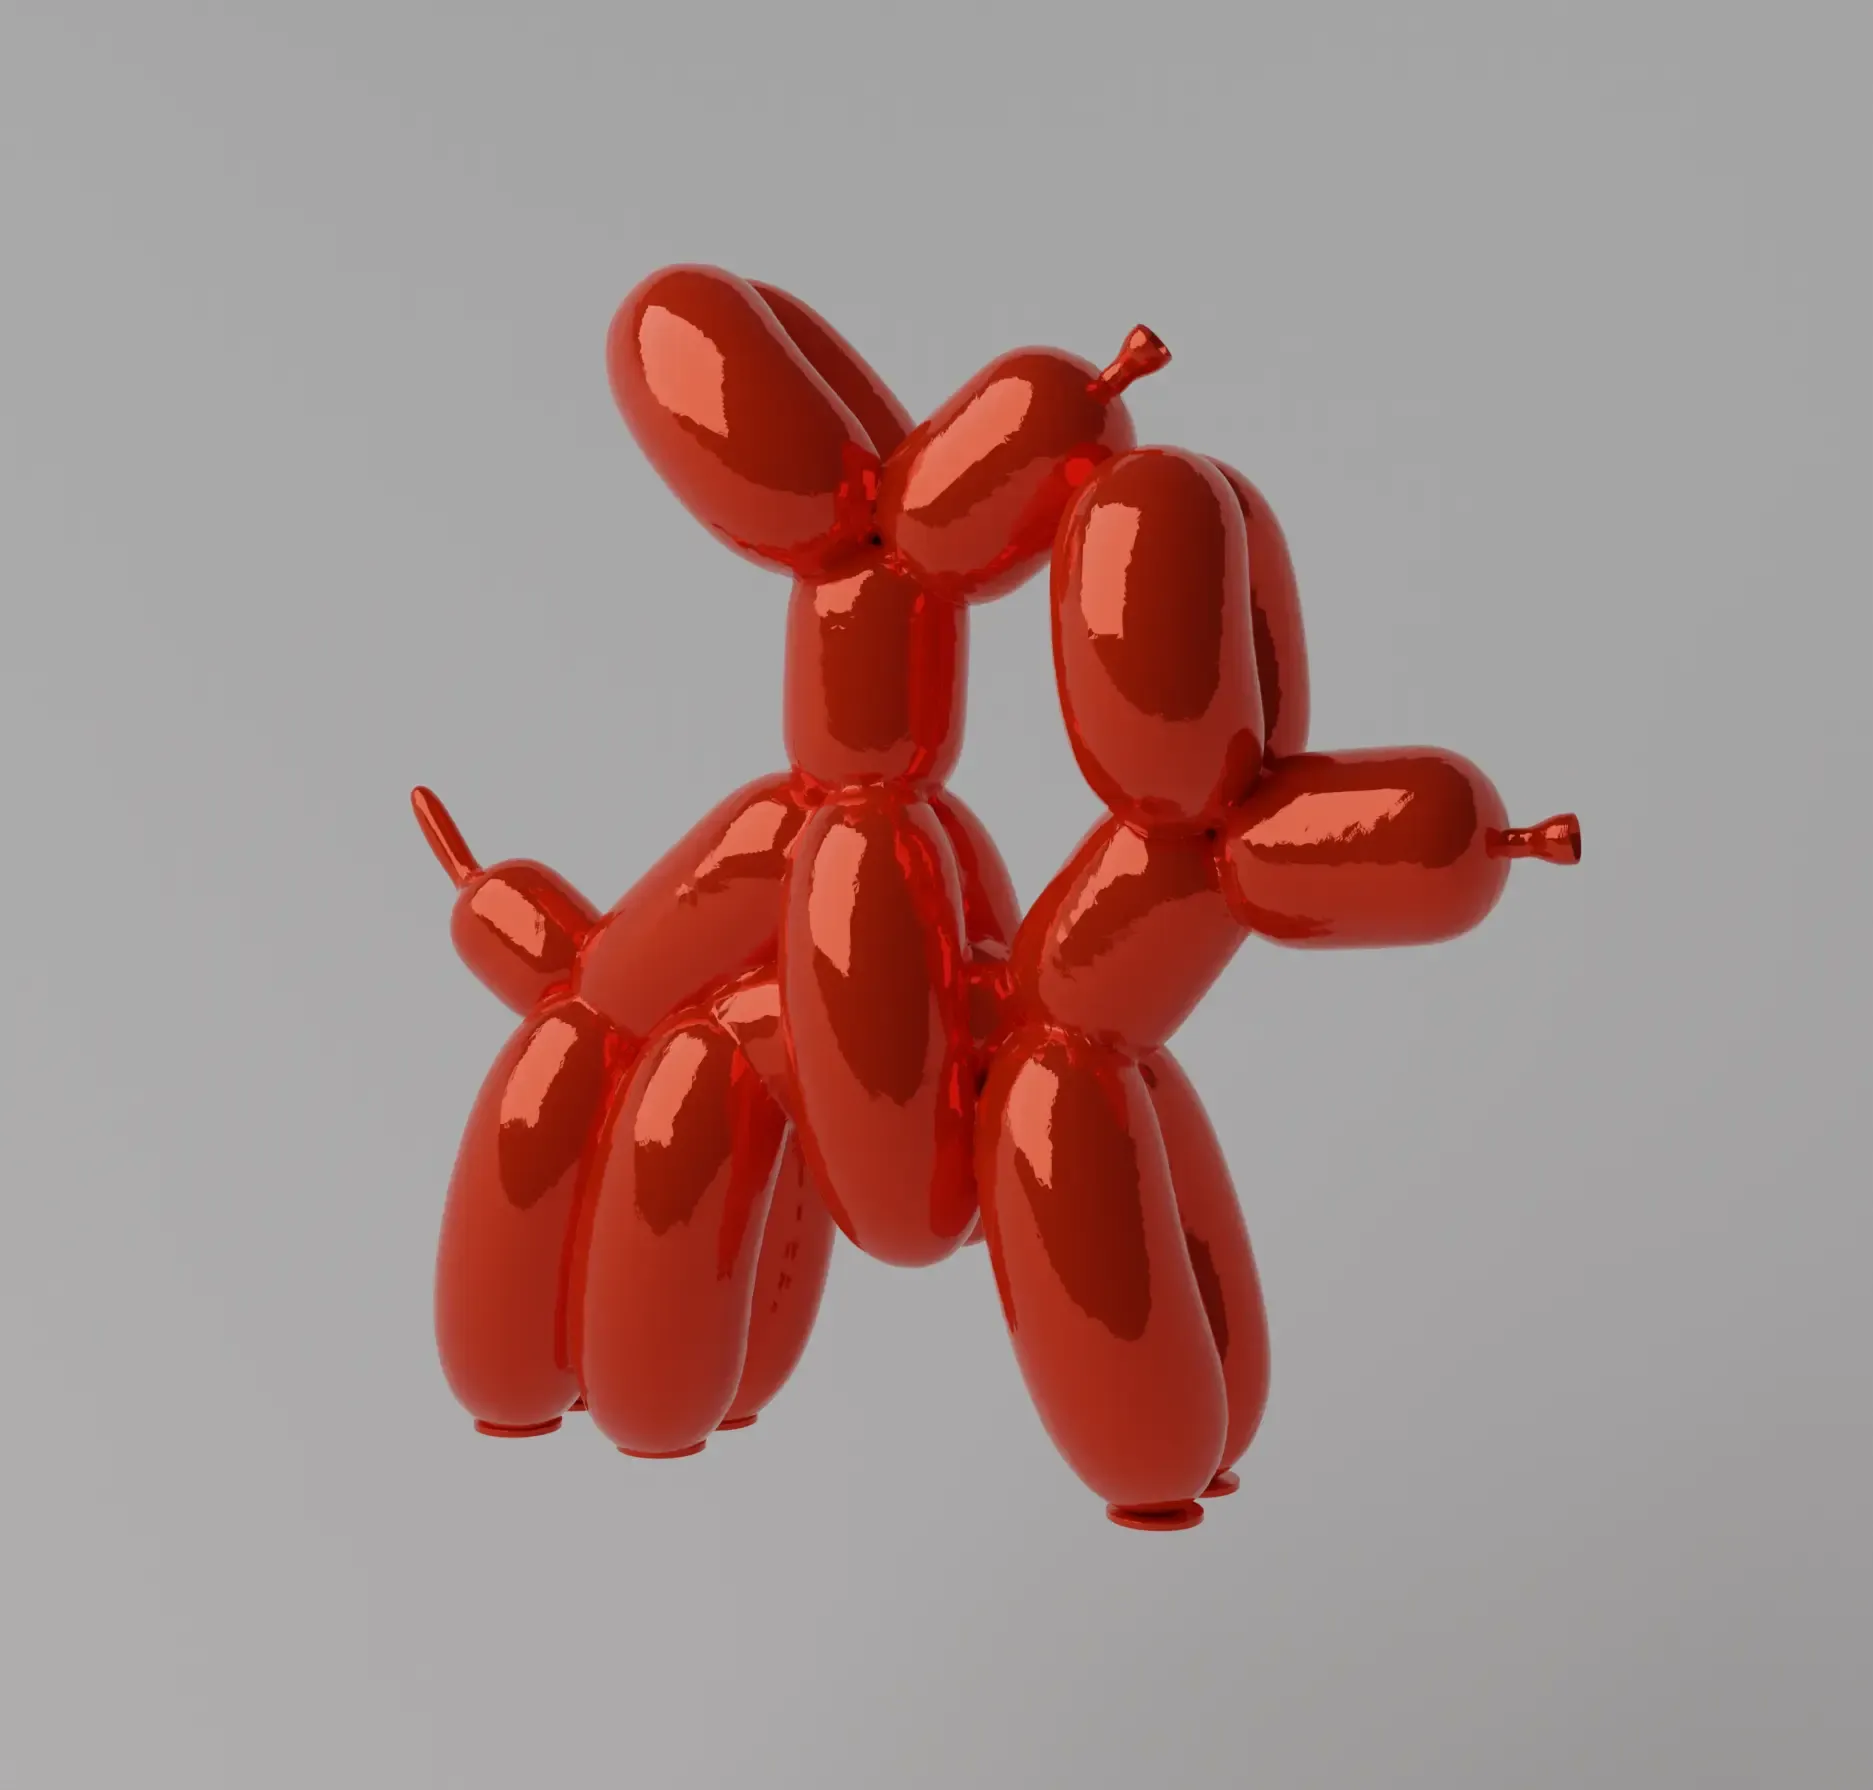 Humpek Balloon Dog Art Toy Fan Art